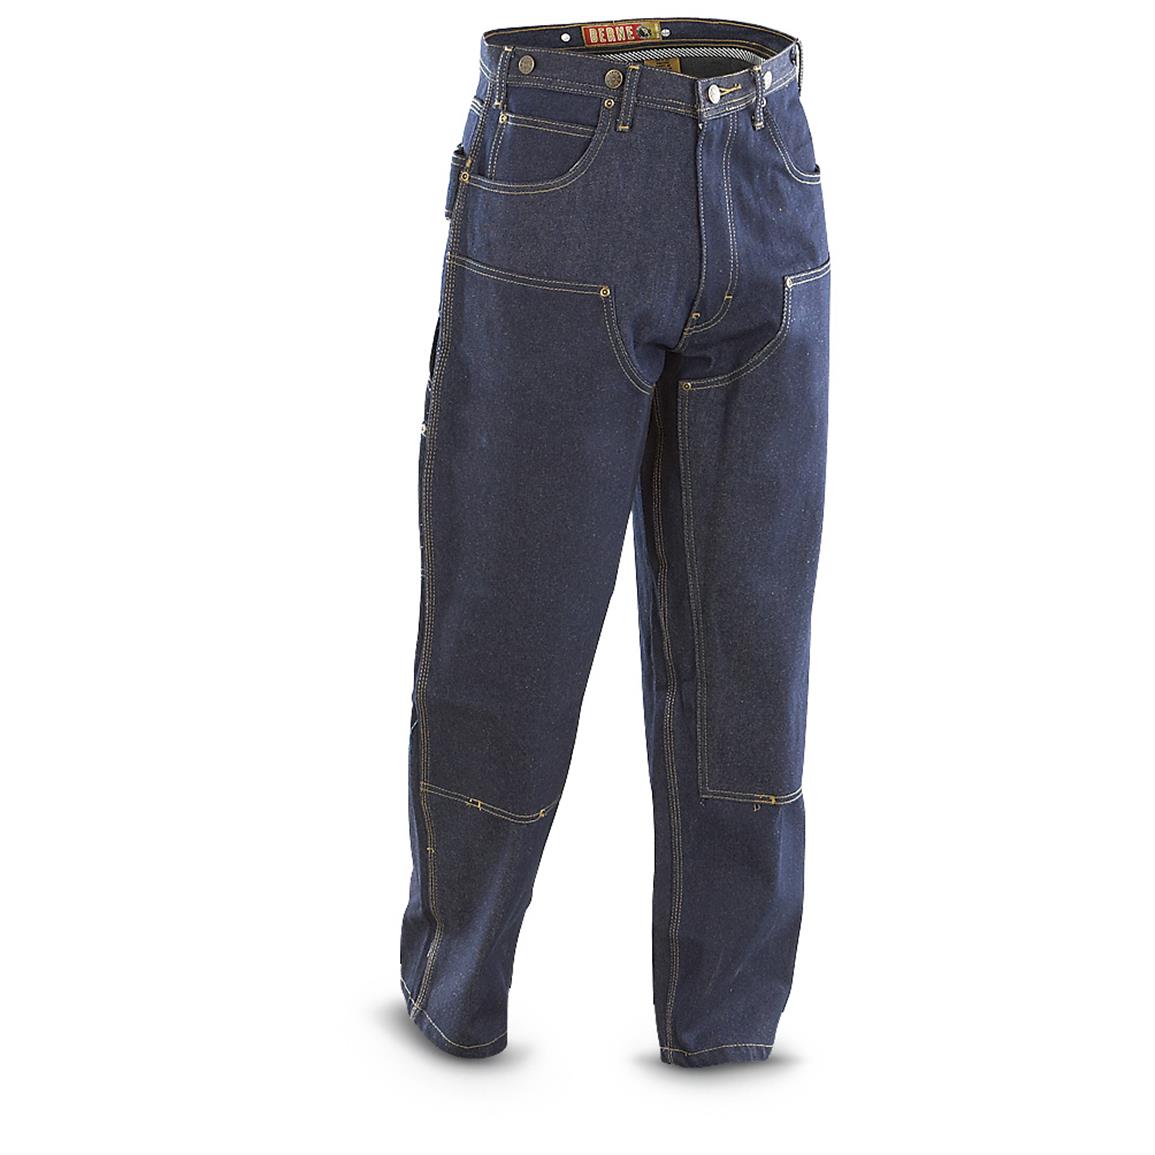 Berne Rigid Double-knee Carpenter Jeans, Denim - 614580, Jeans & Pants ...